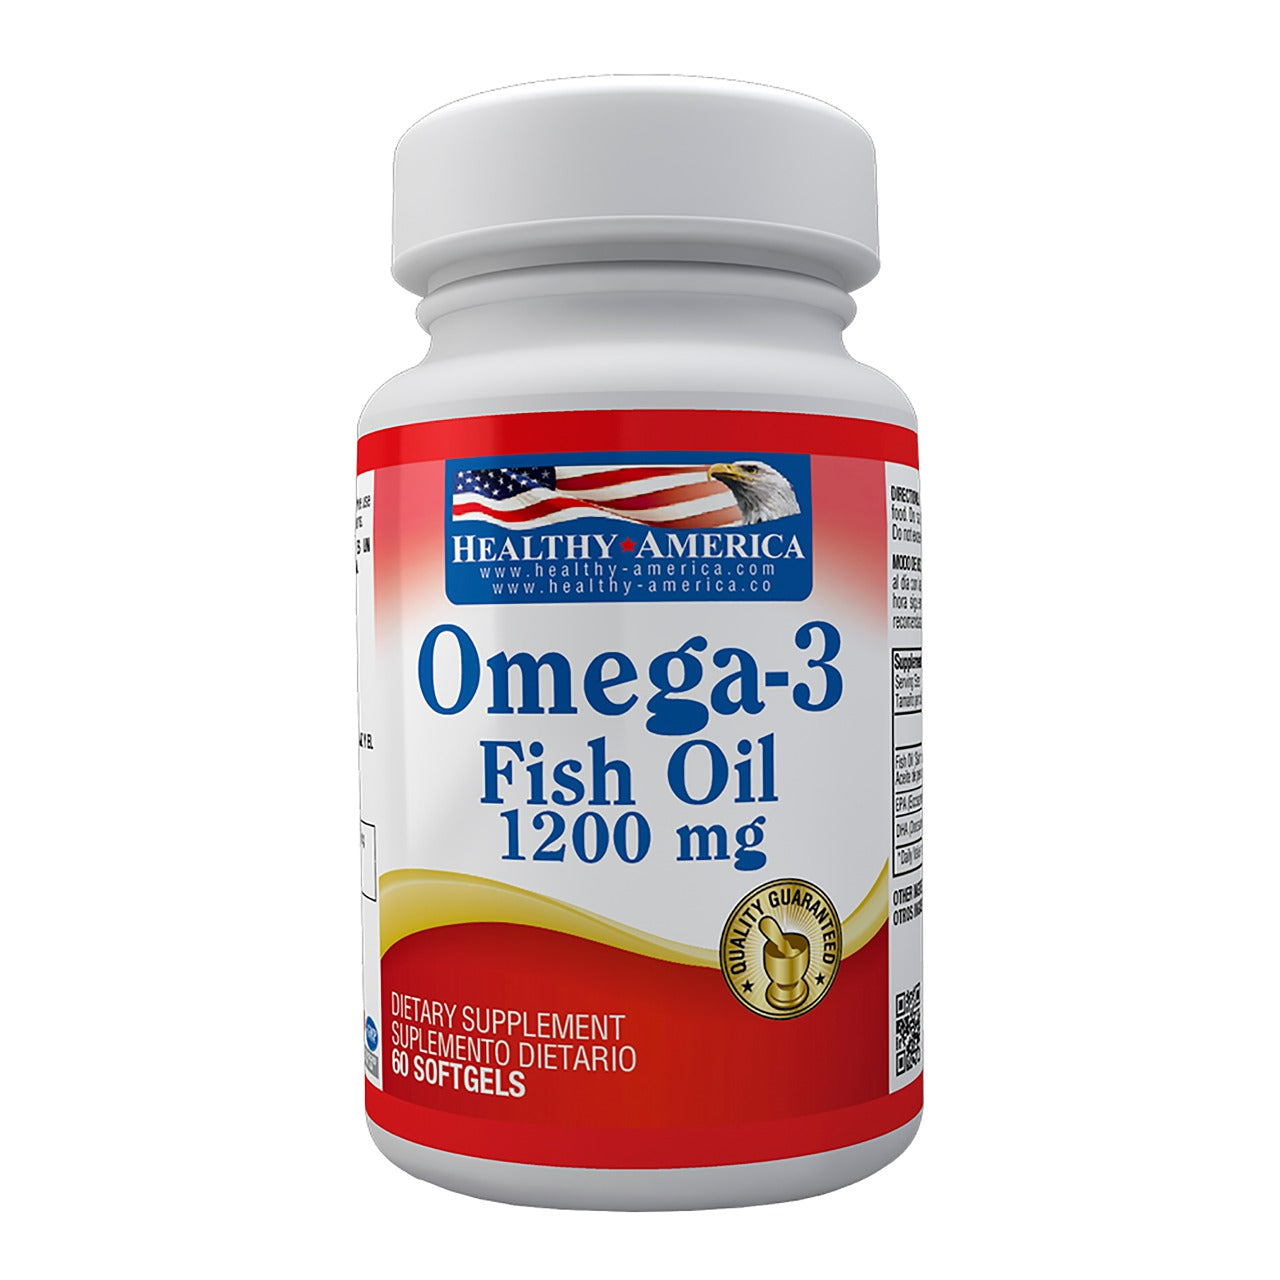 OMEGA-3 FISH OIL 1200 MG 60 SOFTGELS HEALTHY - Uno A Droguerias